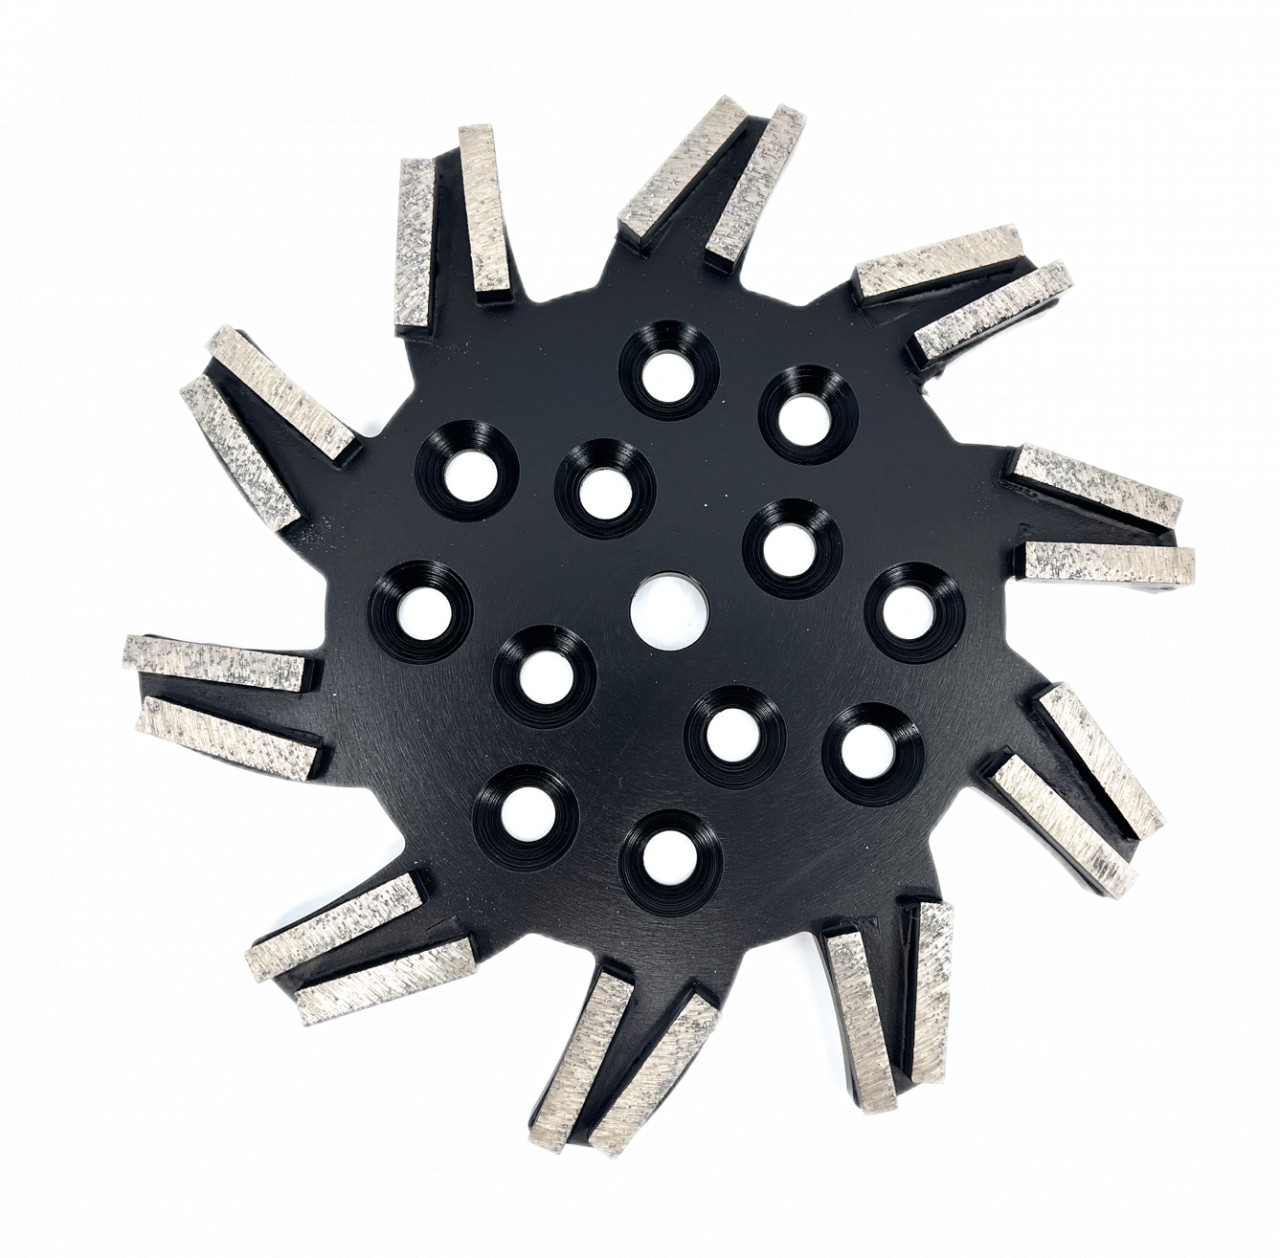 Disc stea cu segmenti diamantati pt. slefuire pardoseli – segment foarte fin – Negru – 250 mm – prindere 19mm – DXDY.8501.250.11.73 19mm